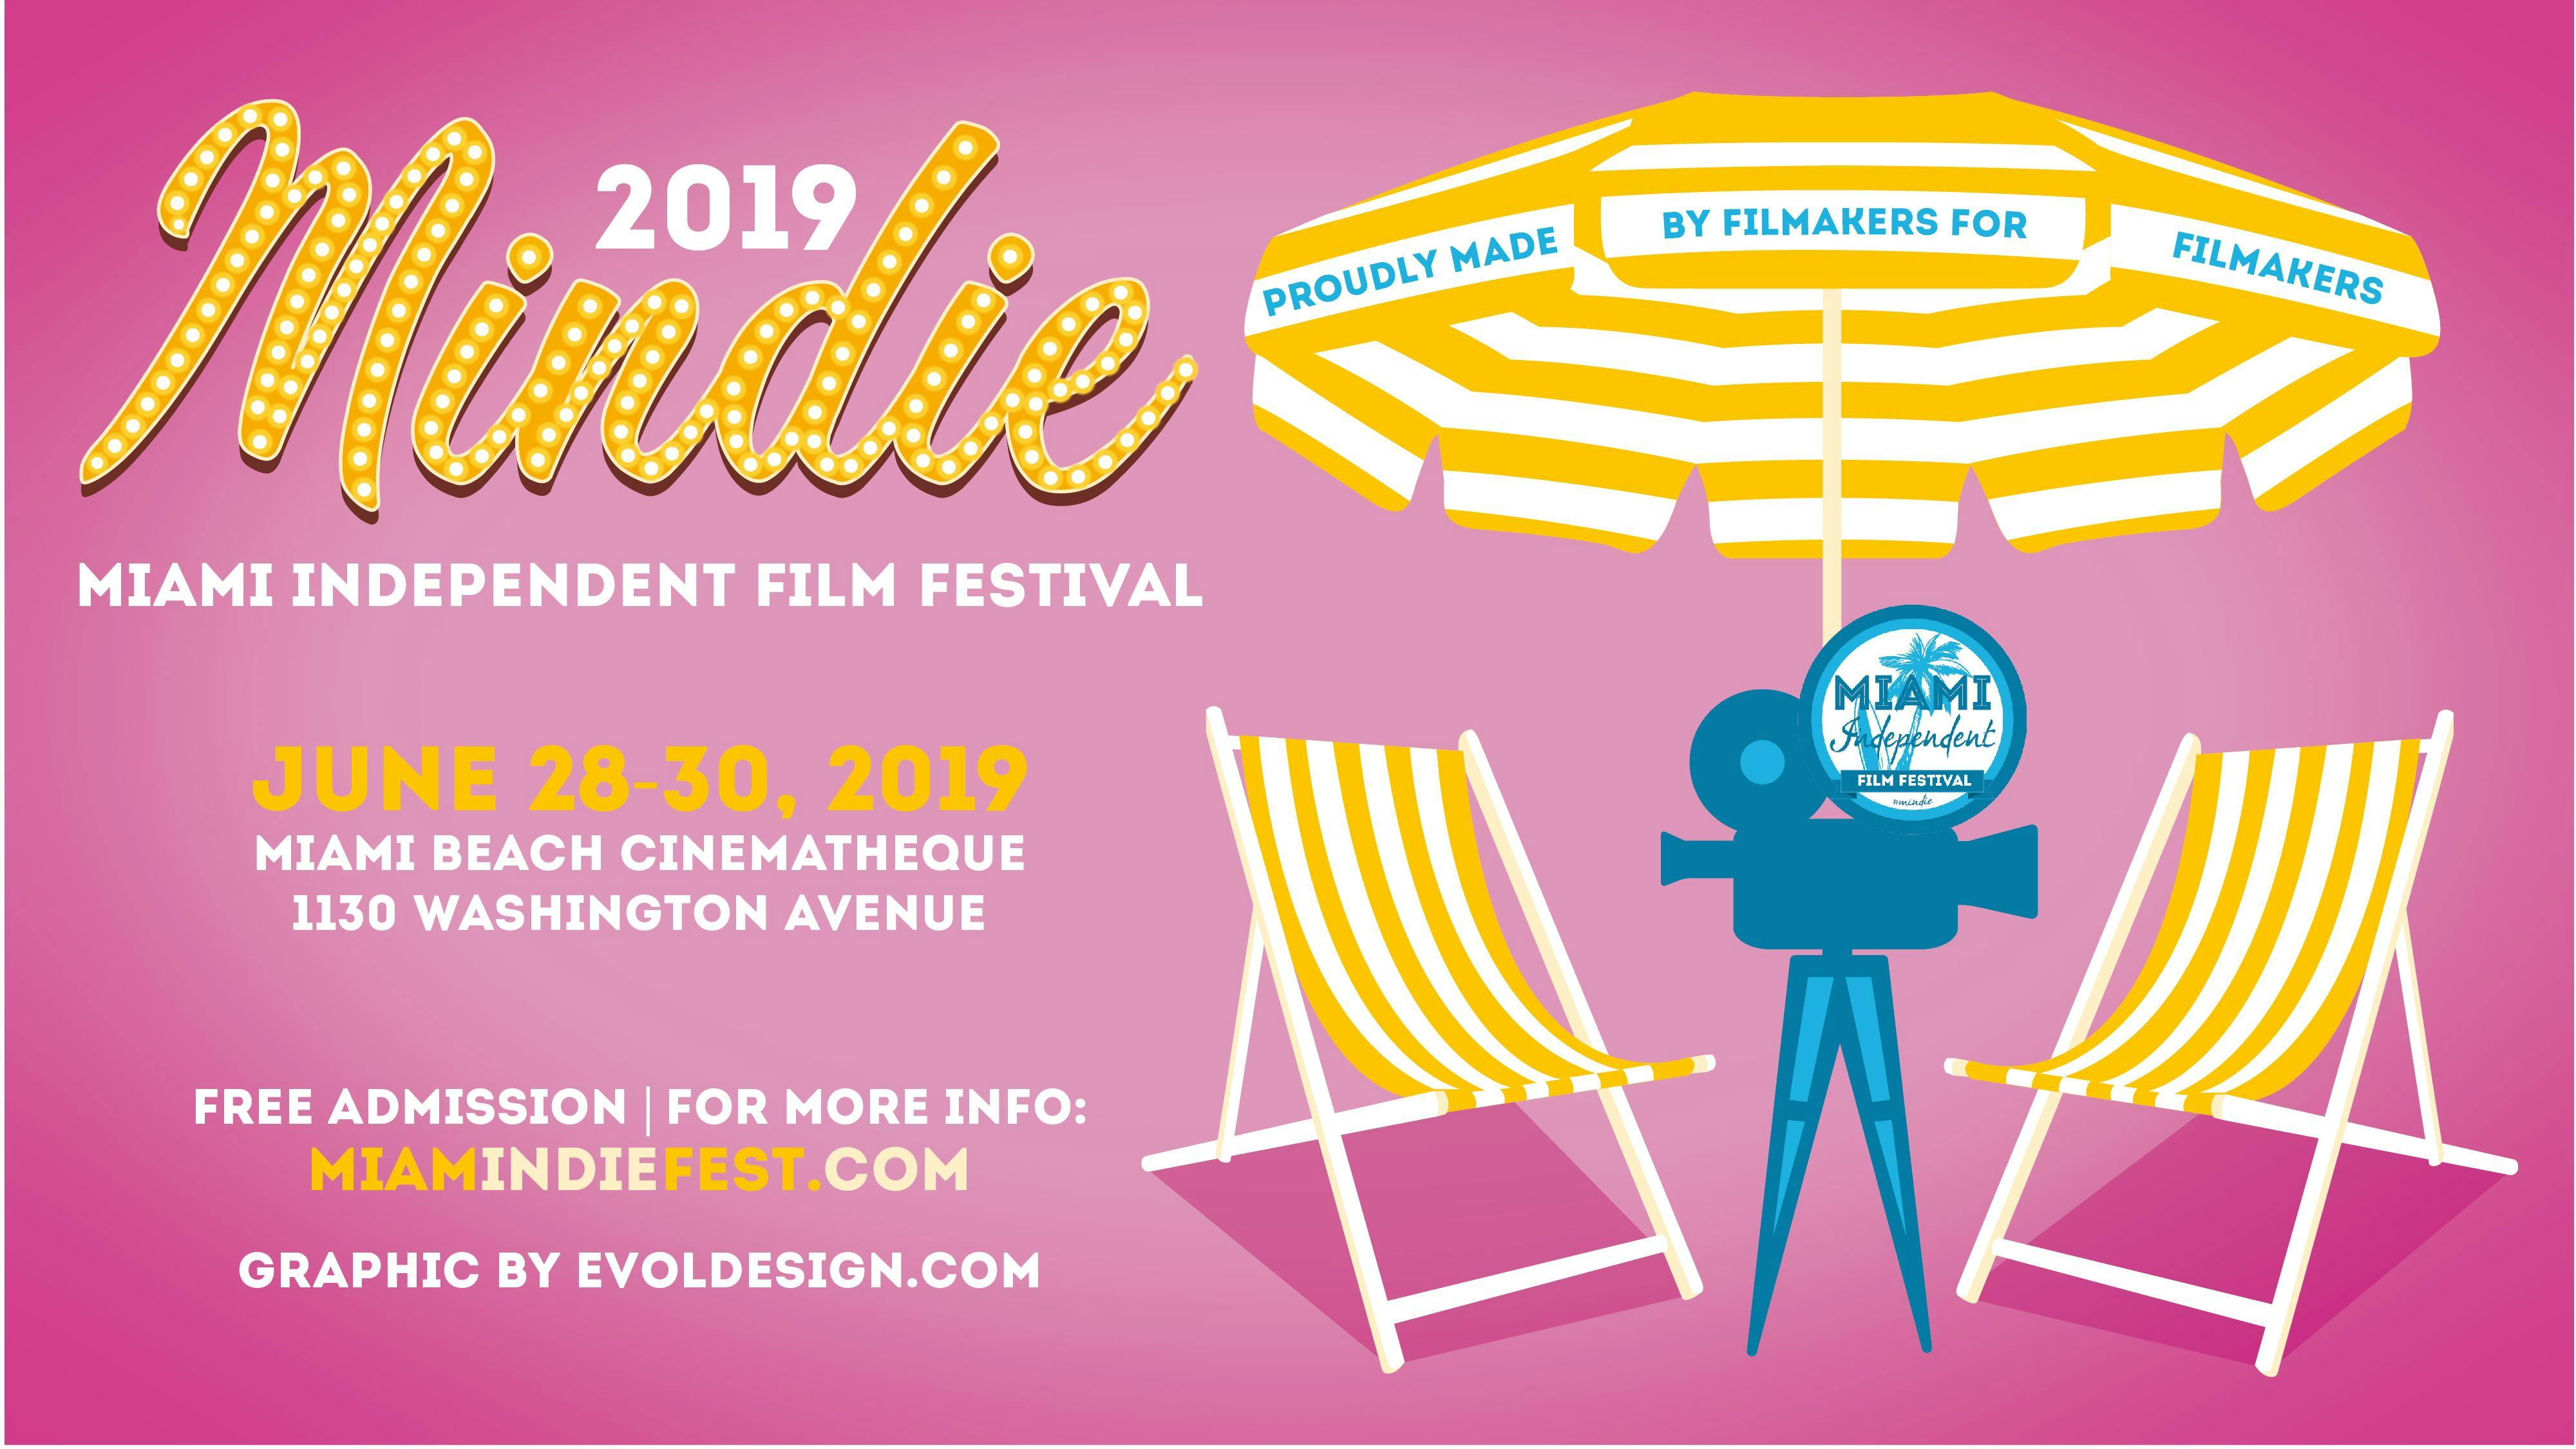 Mindie- Miami Independent Film Festival 2019